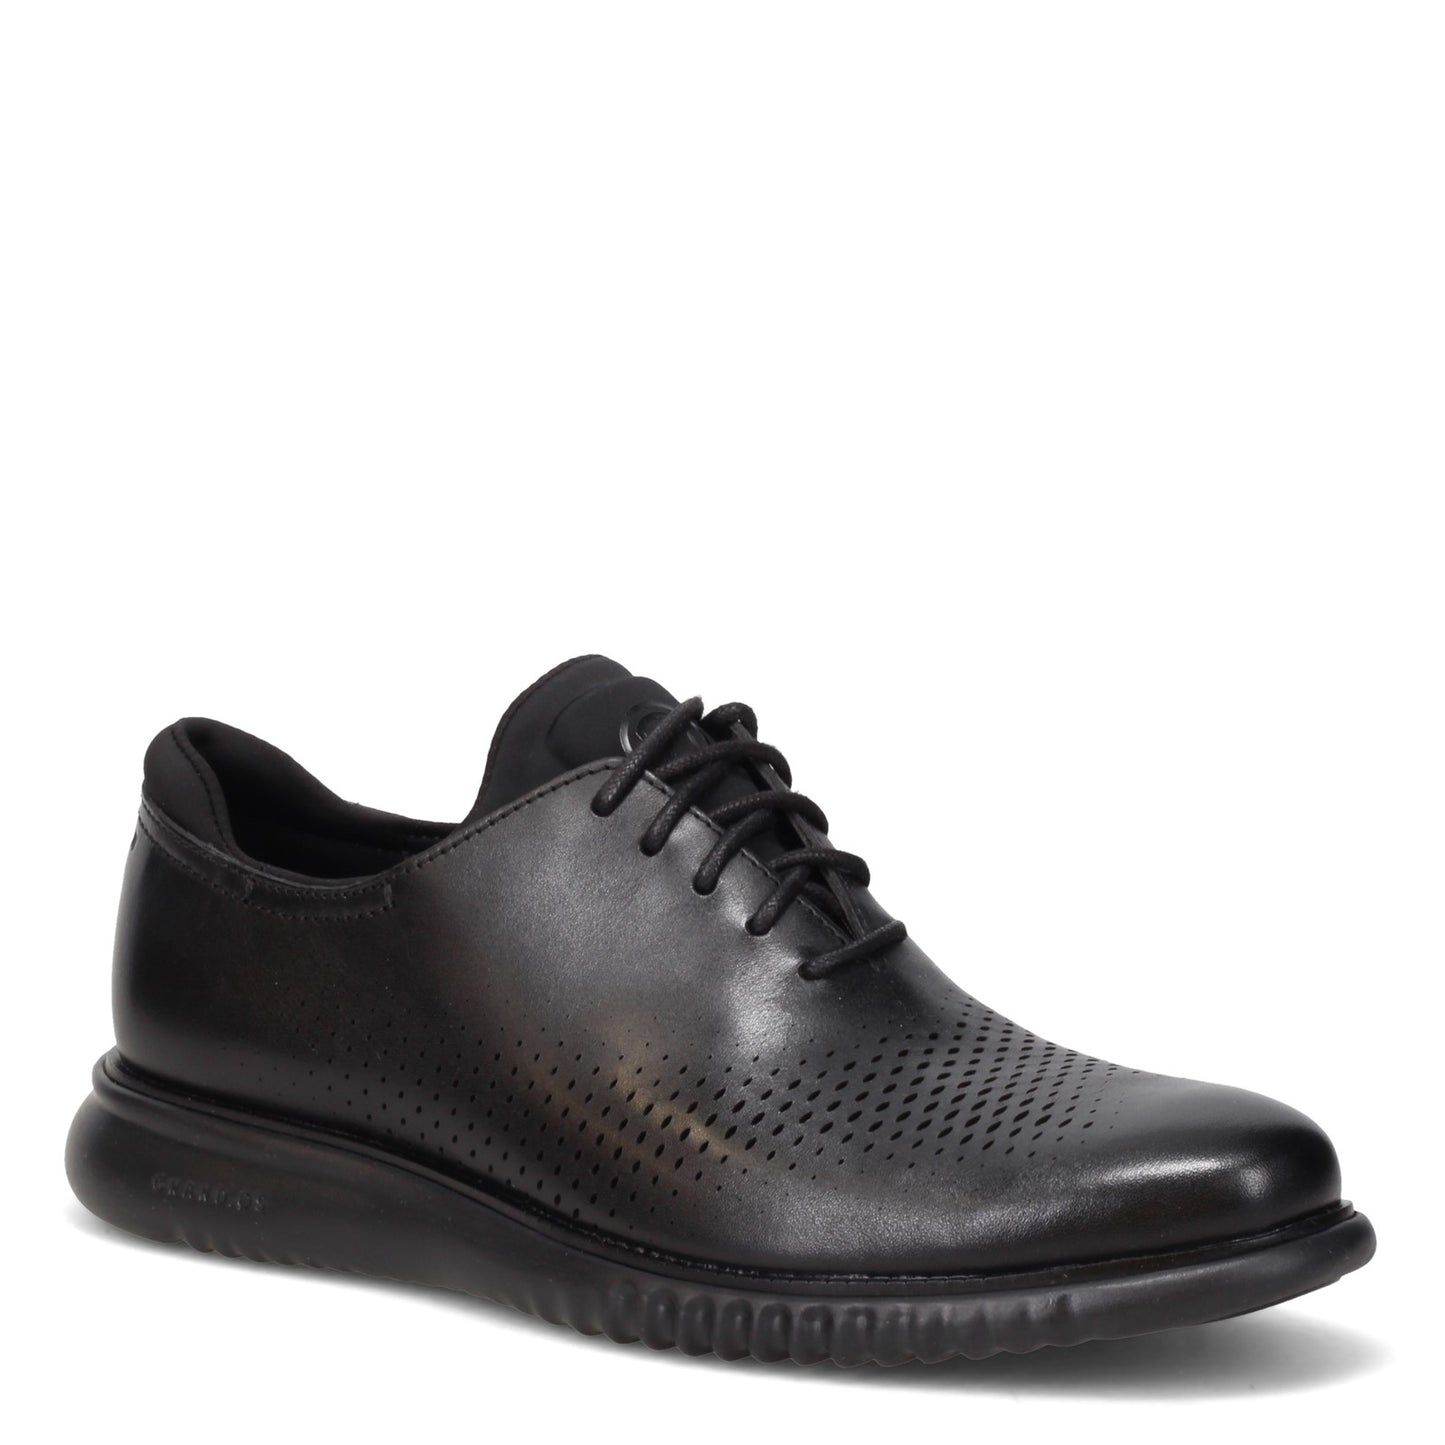 Peltz Shoes  Men's Cole Haan 2.ZEROGRAND Laser Oxford Black/Black C23832